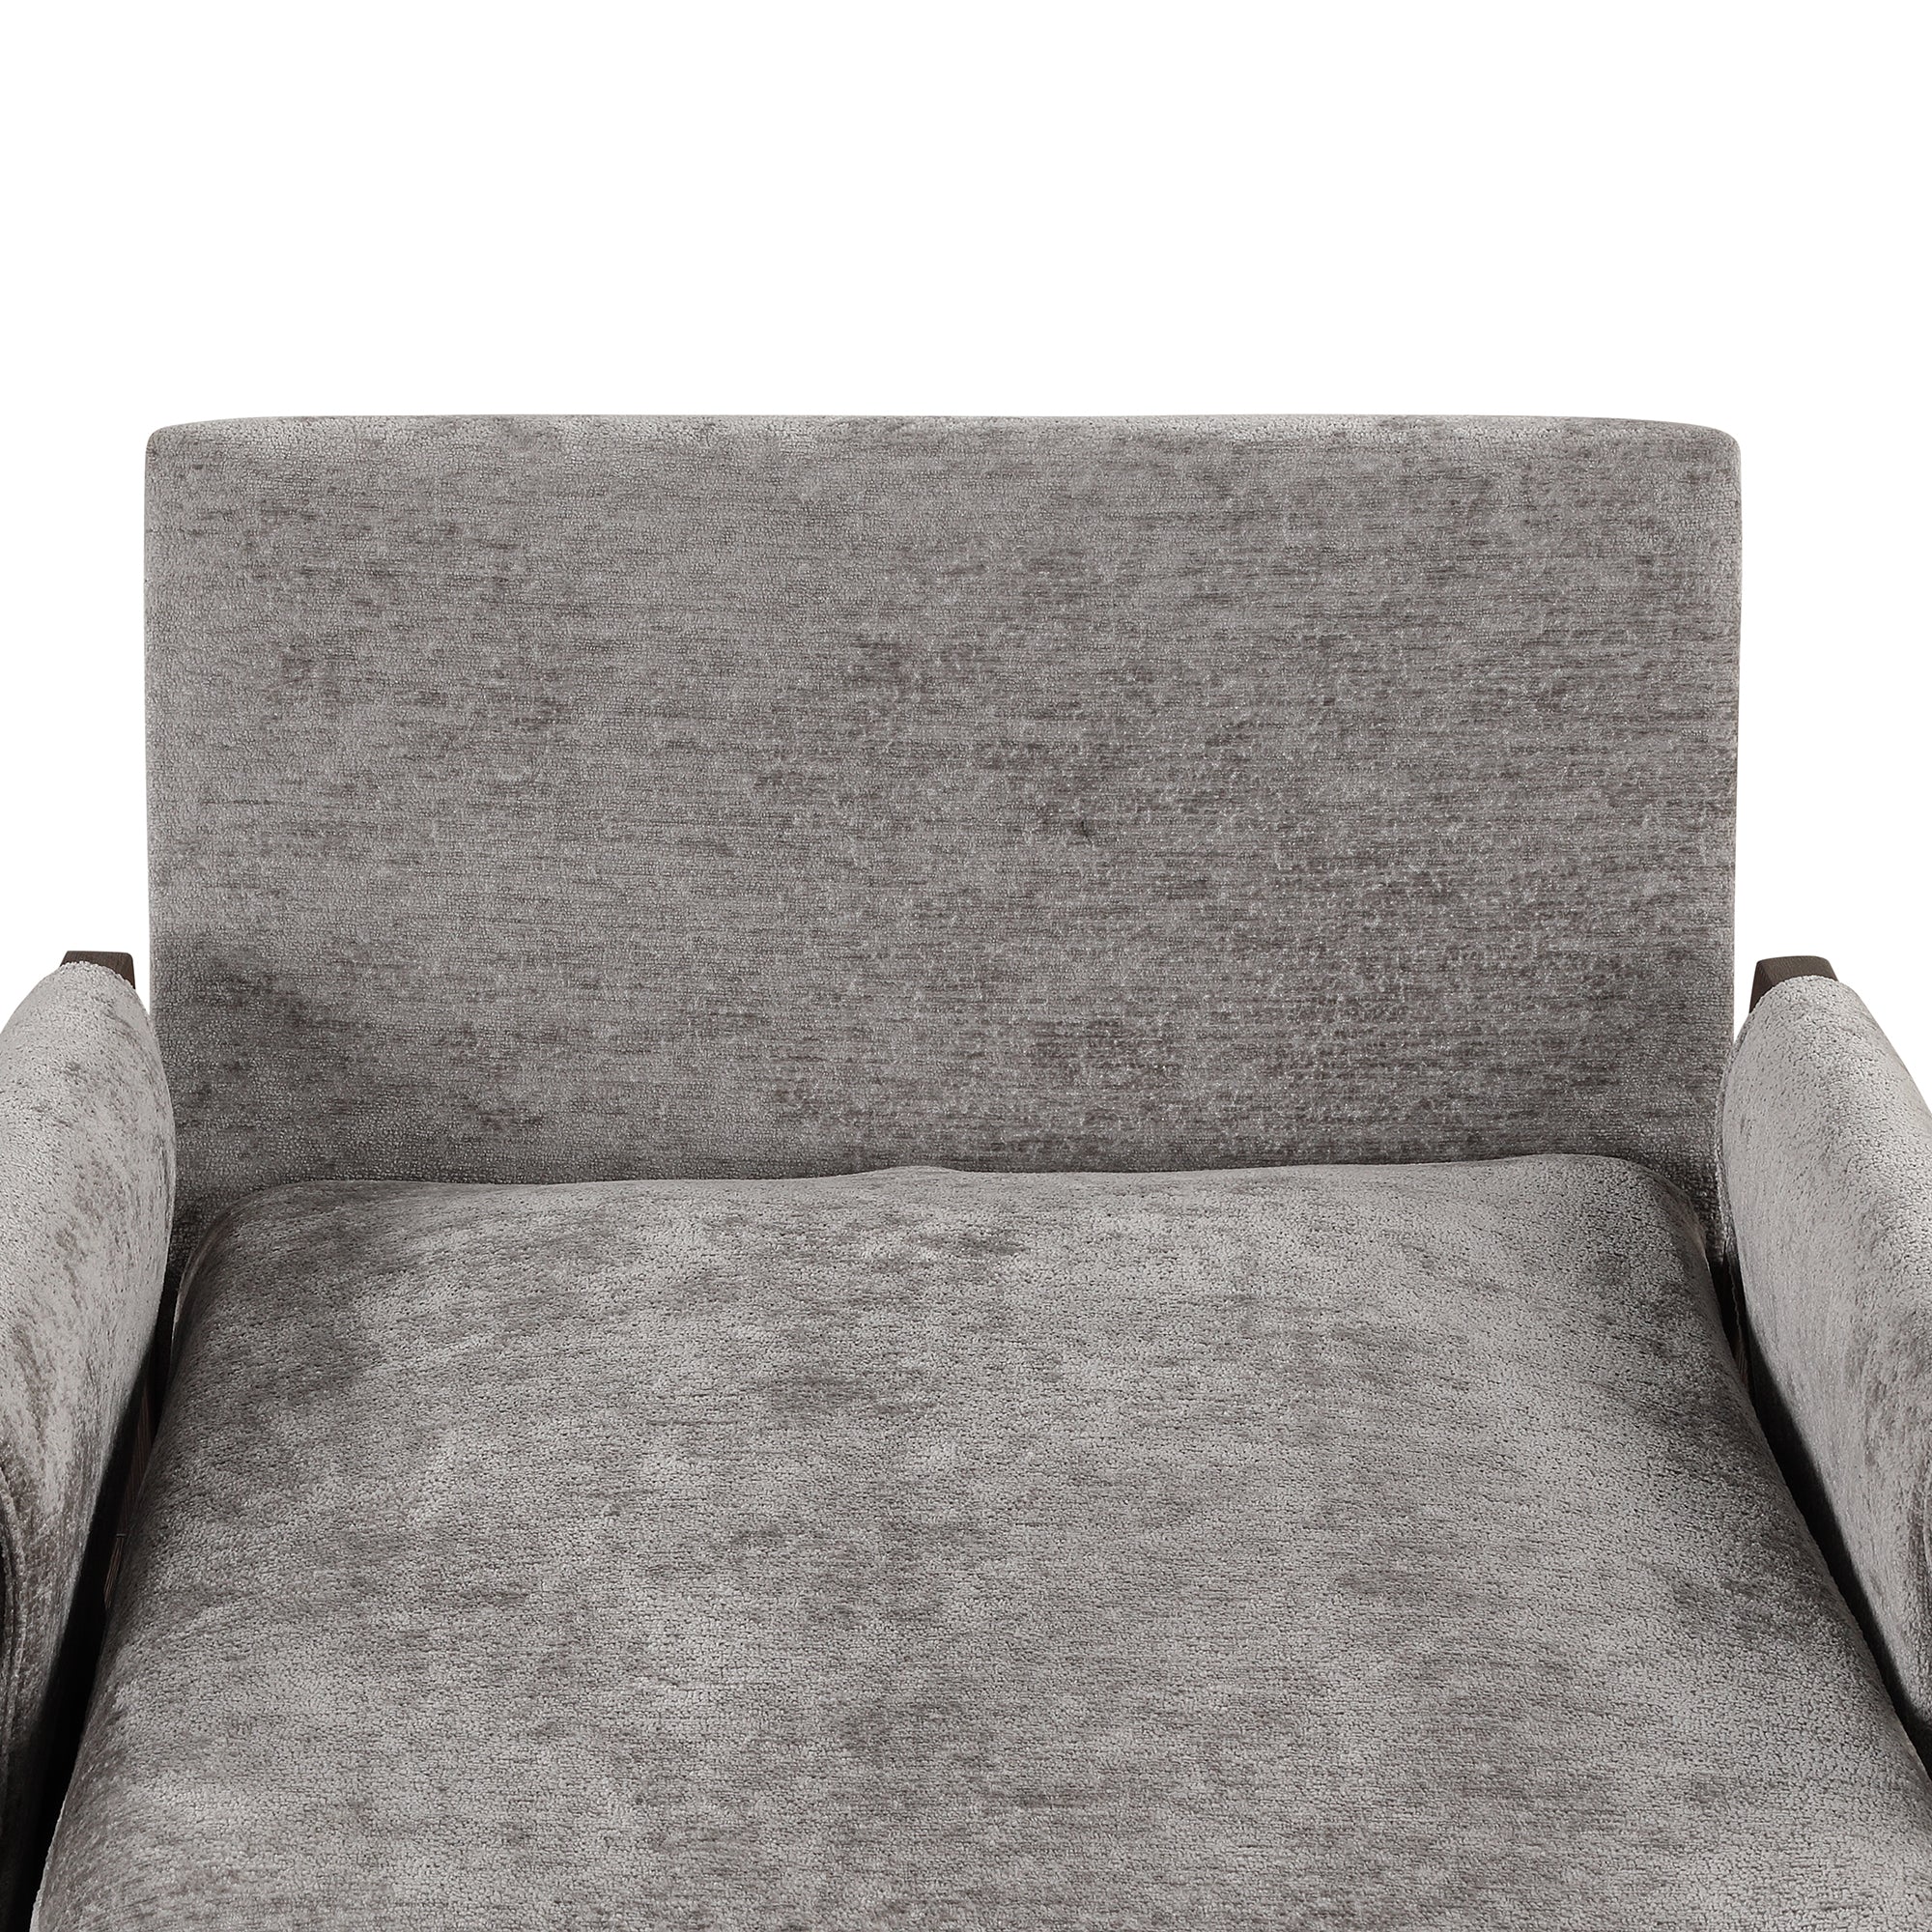 Mid Century Modern Velvet Accent Chair,Leisure Chair grey-foam-velvet